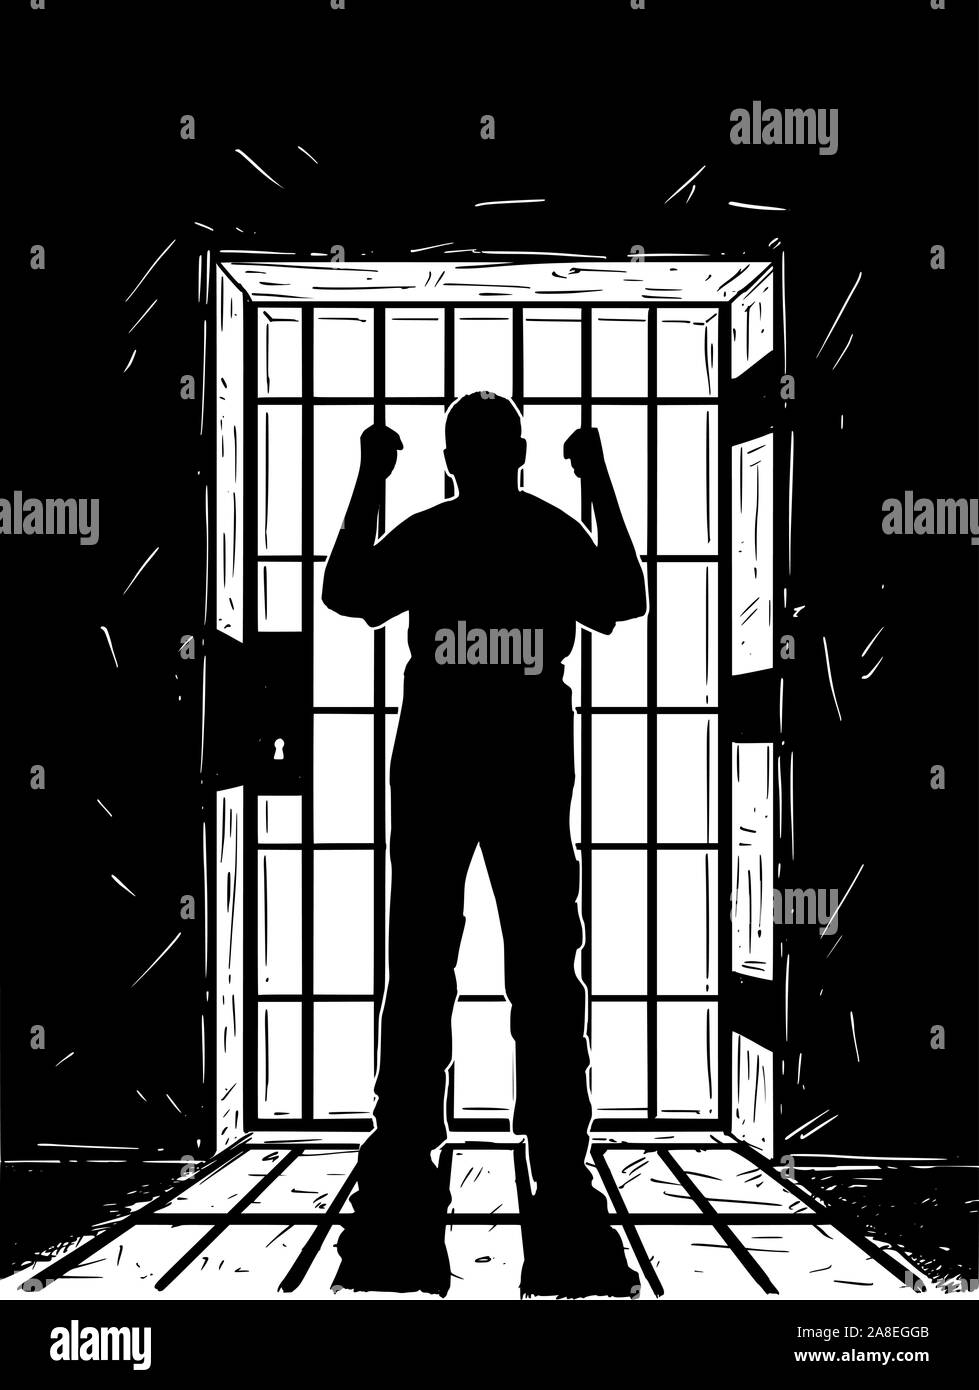 En noir et blanc vectoriel dessin artistique de prisonnier en cellule de prison tenant des barres de fer. La lumière provenant de l'extérieur est d'ombre. Illustration de Vecteur